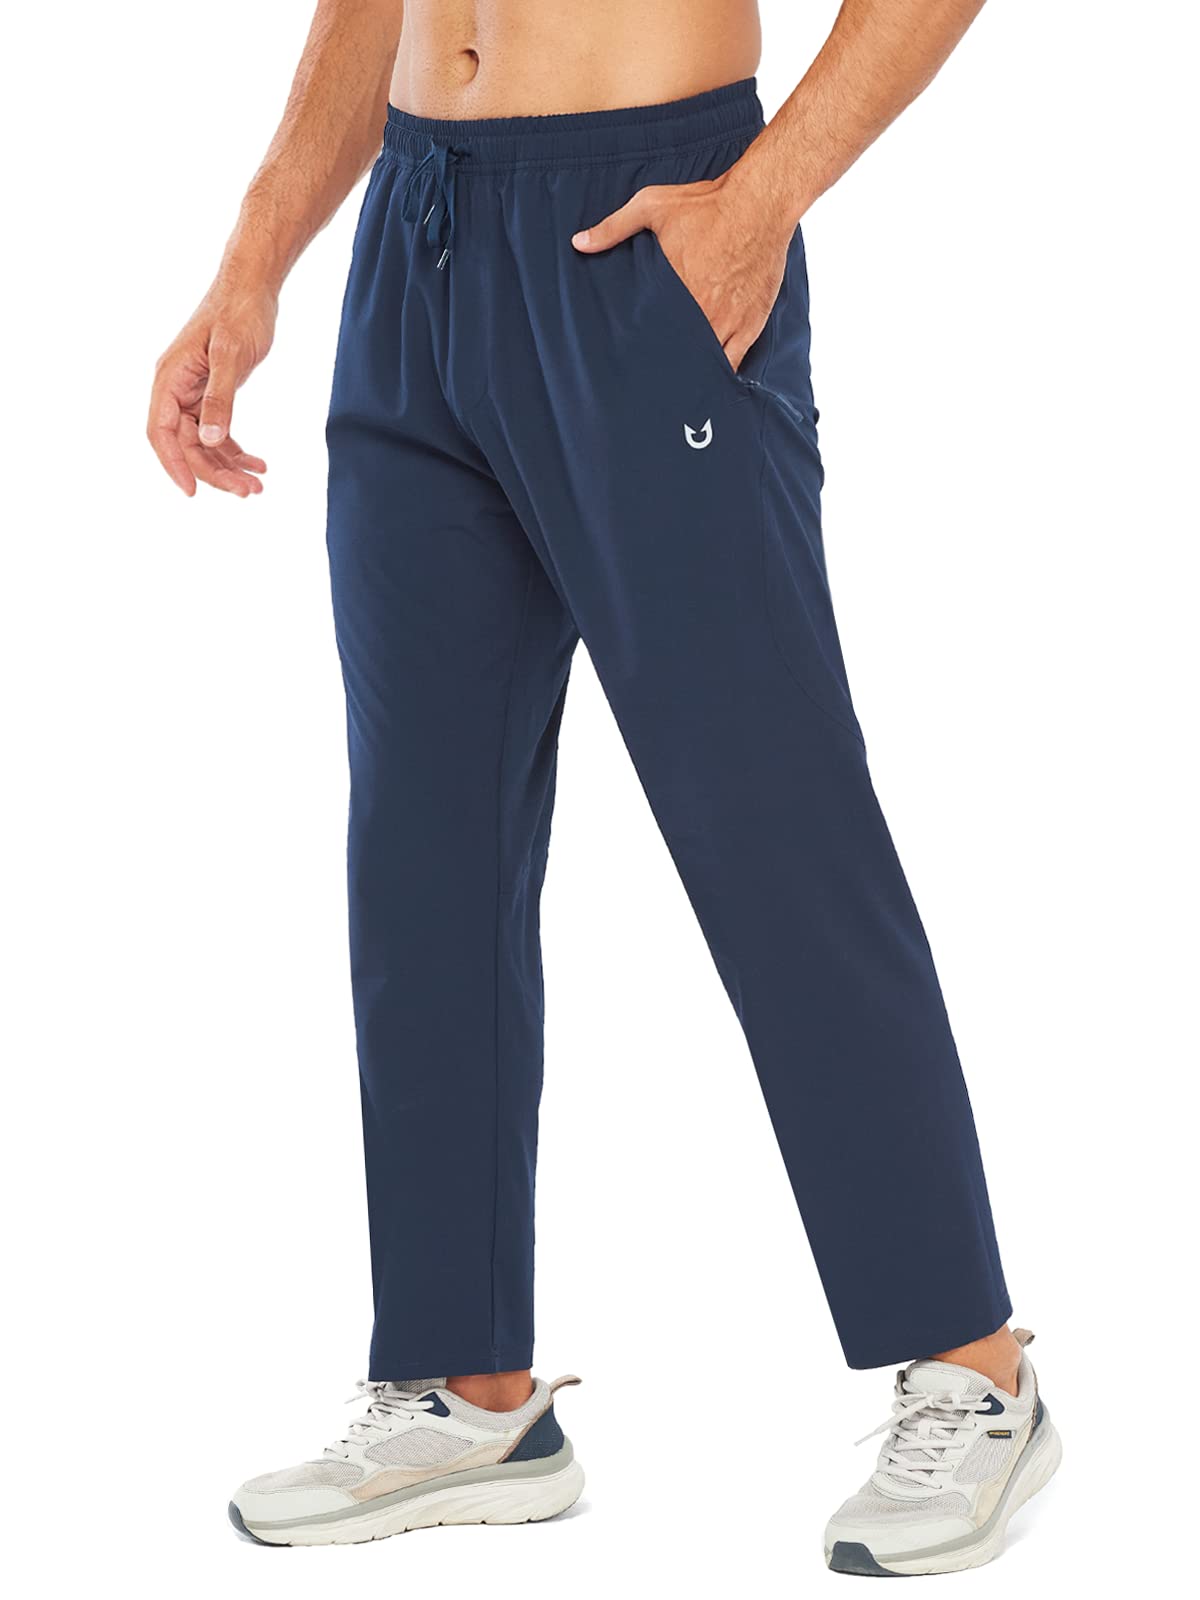 Men's Workout Pants, Joggers & Sweatpants in Blue